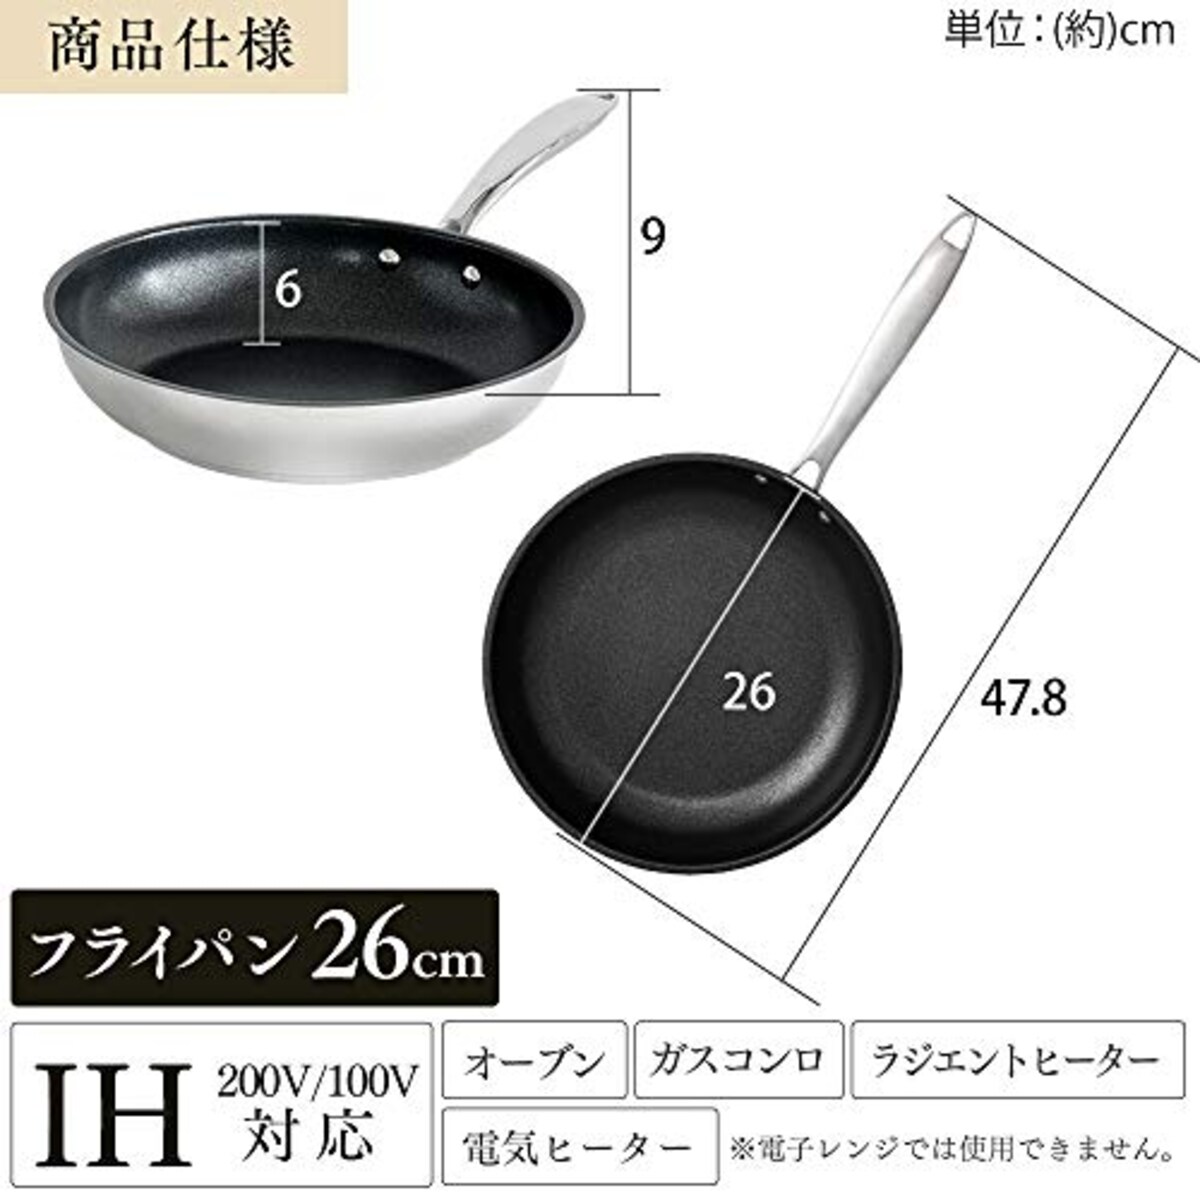  アイリスオーヤマ フライパン シルバー ステンレス 26cm IH対応 SP-F26画像7 